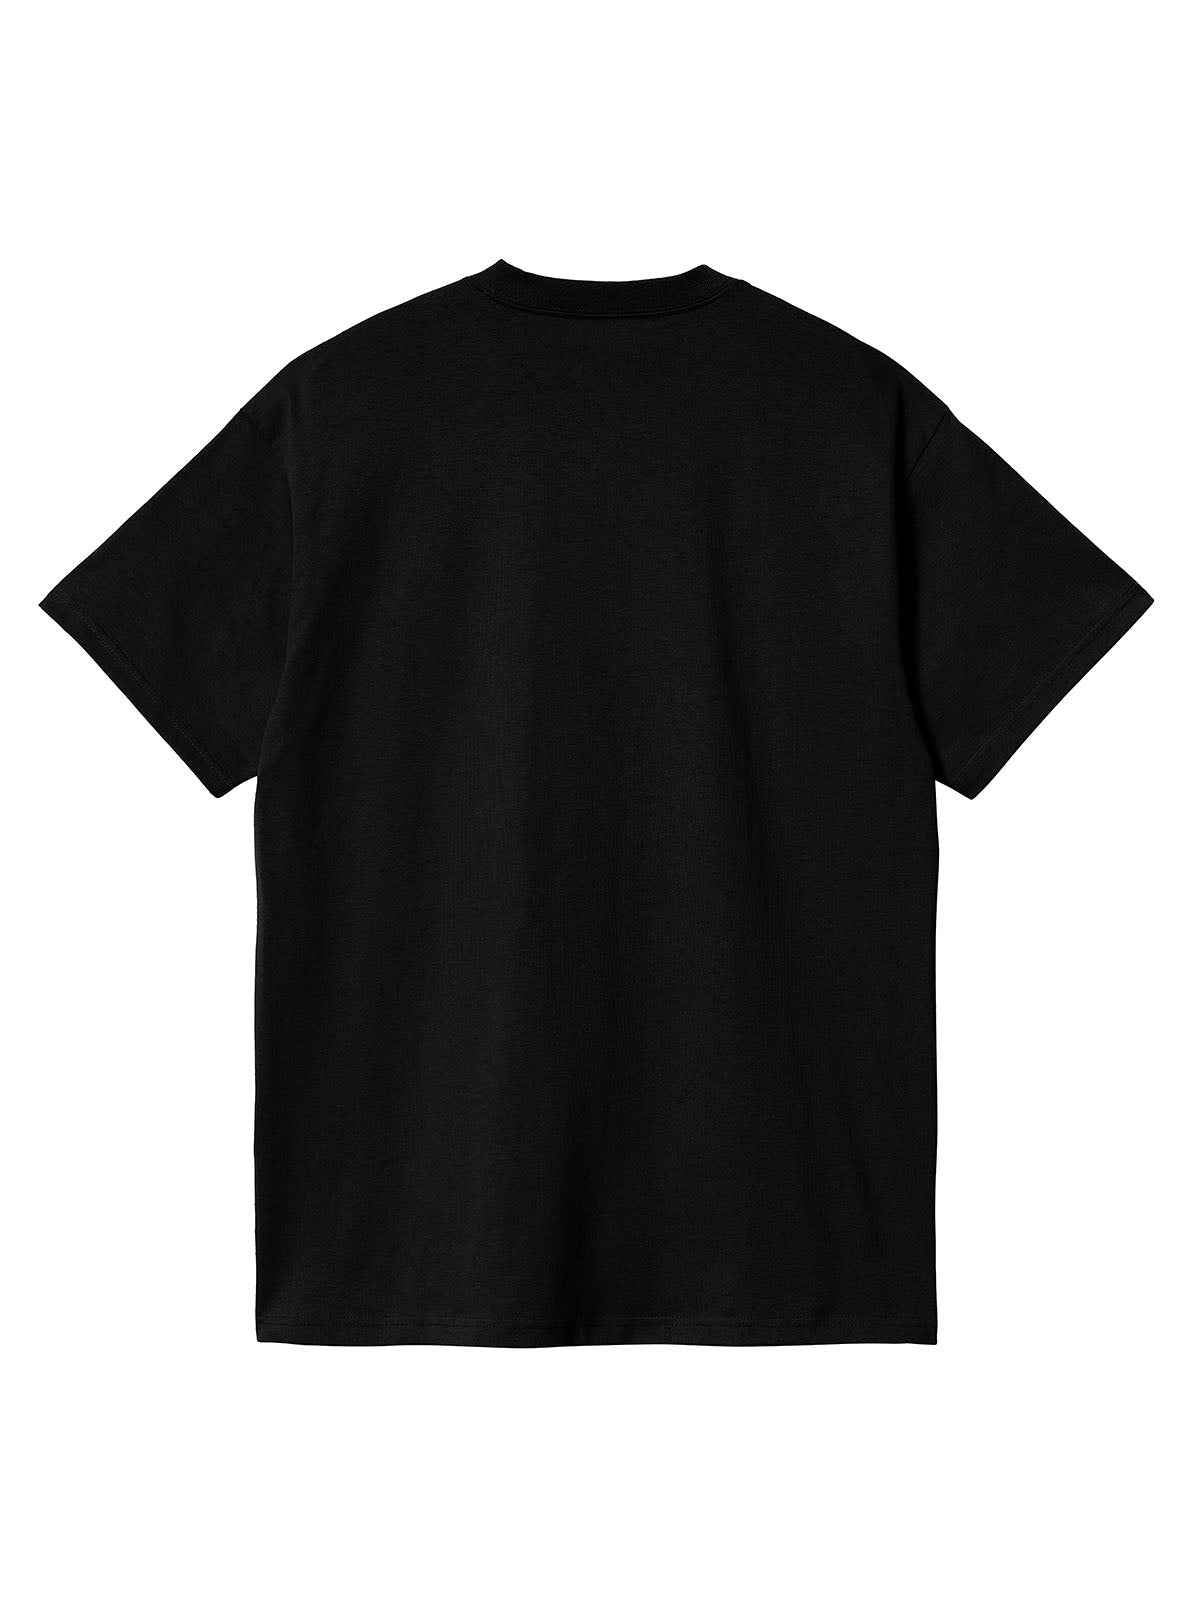 T-shirt Uomo Carhartt Wip - S/S Field Pocket T-Shirt - Nero